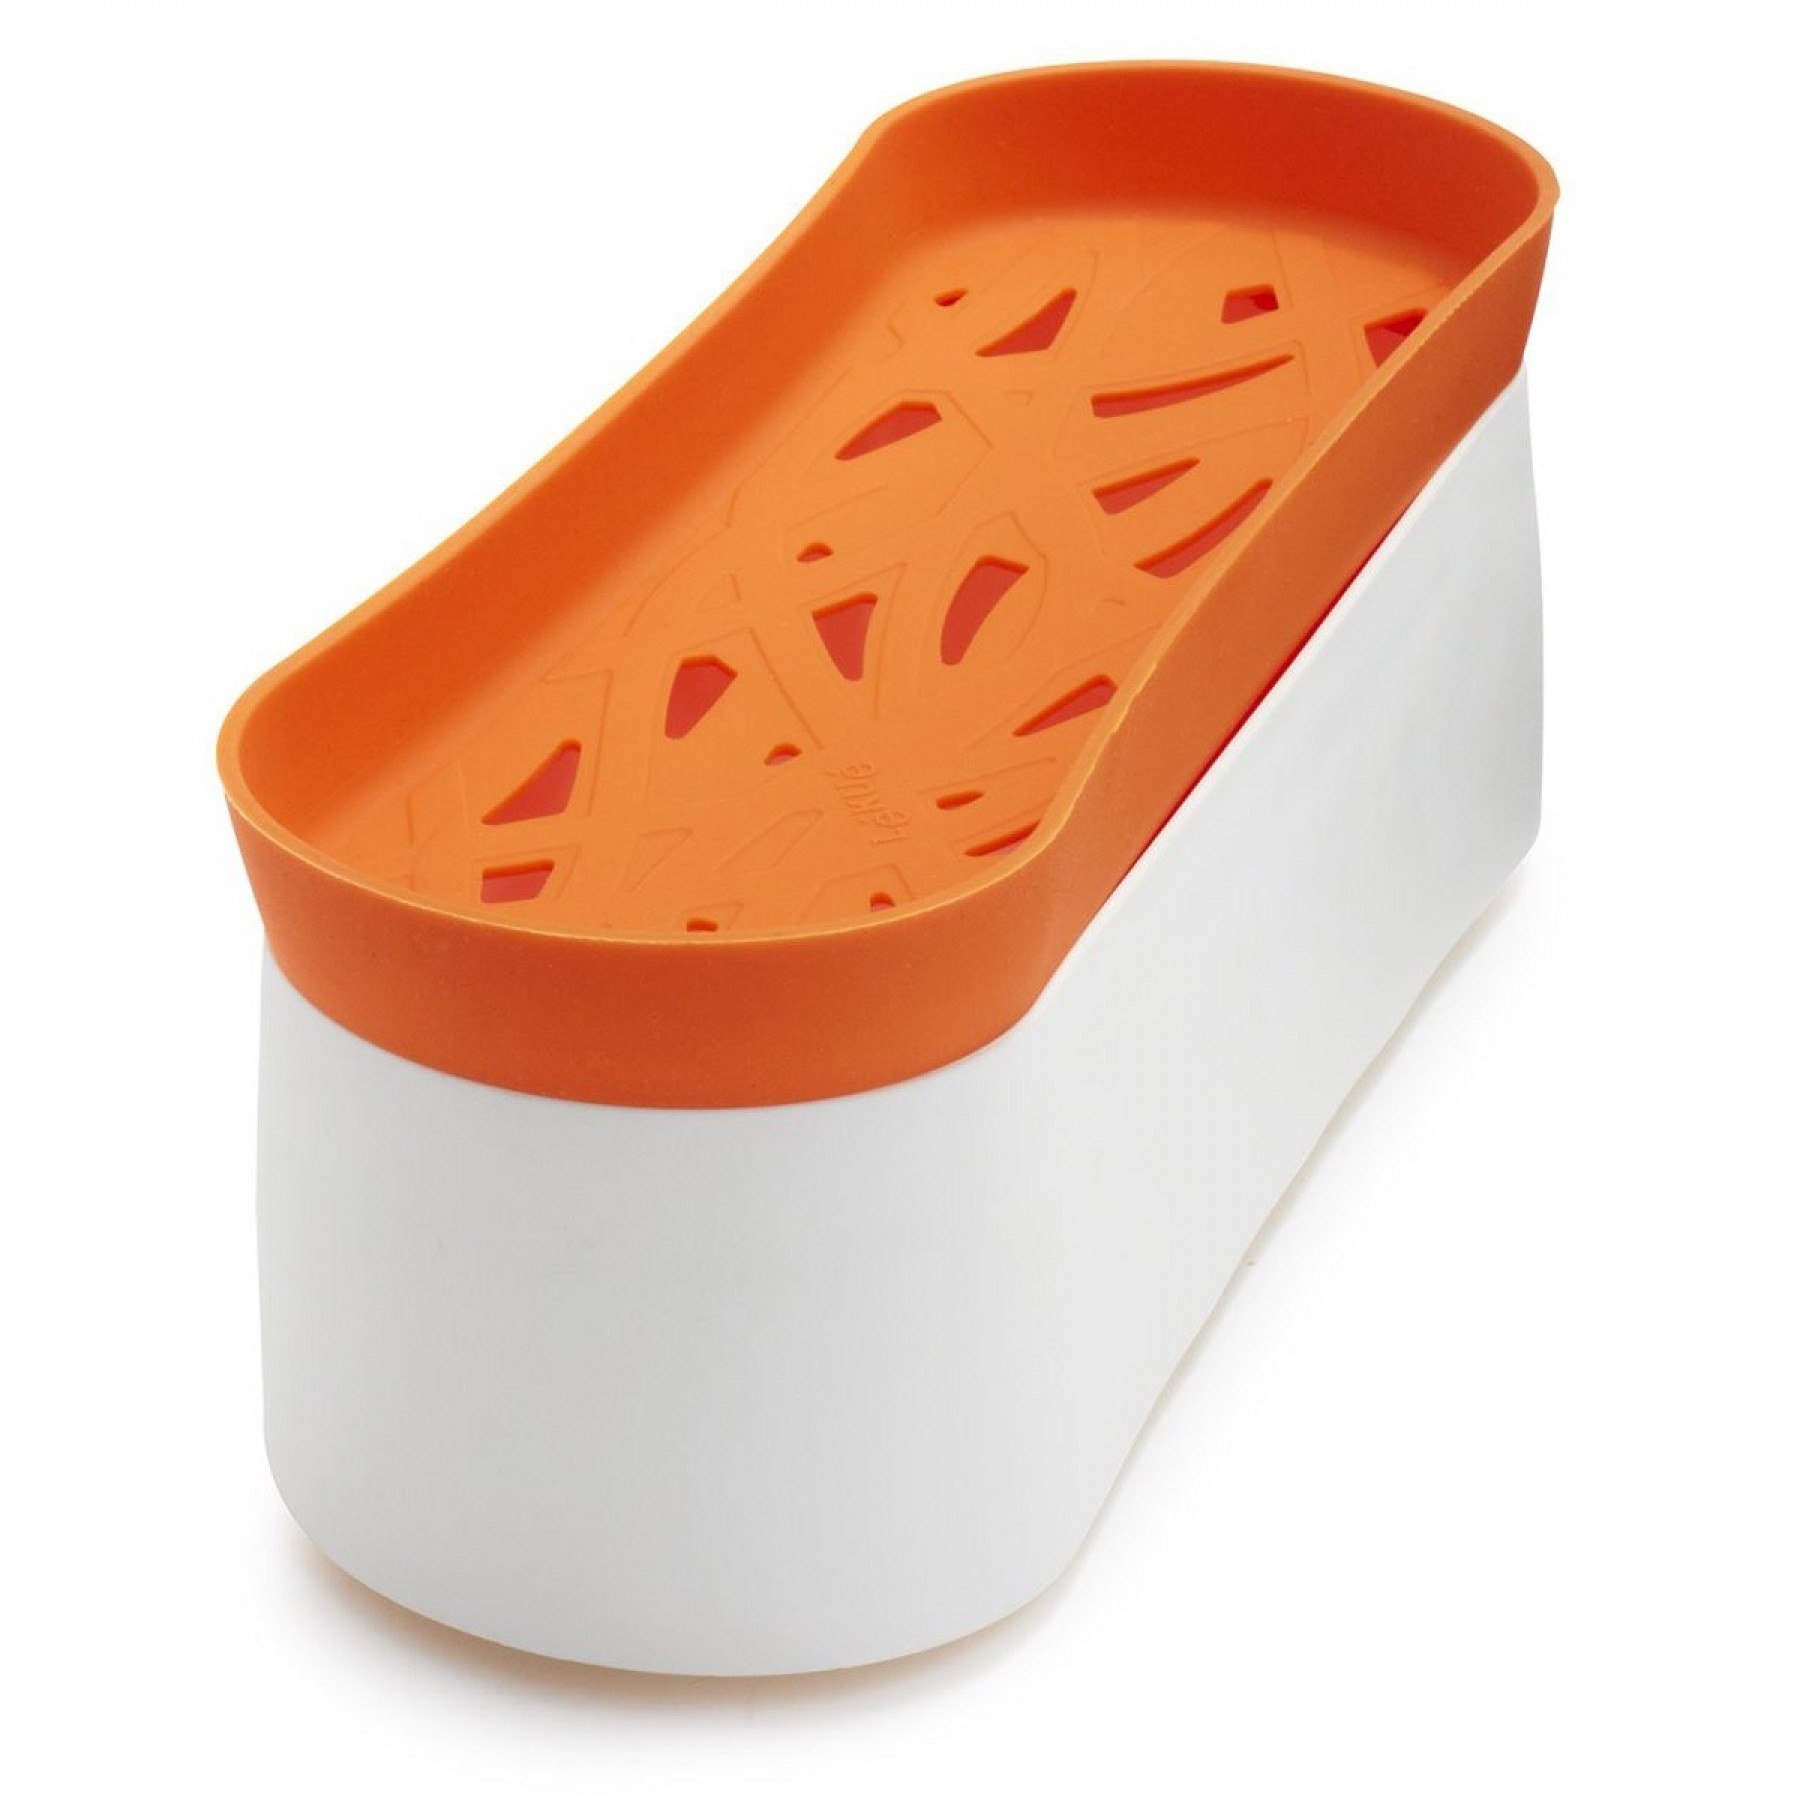 cocer pasta en microondas – Compra cocer pasta en microondas con envío  gratis en AliExpress version